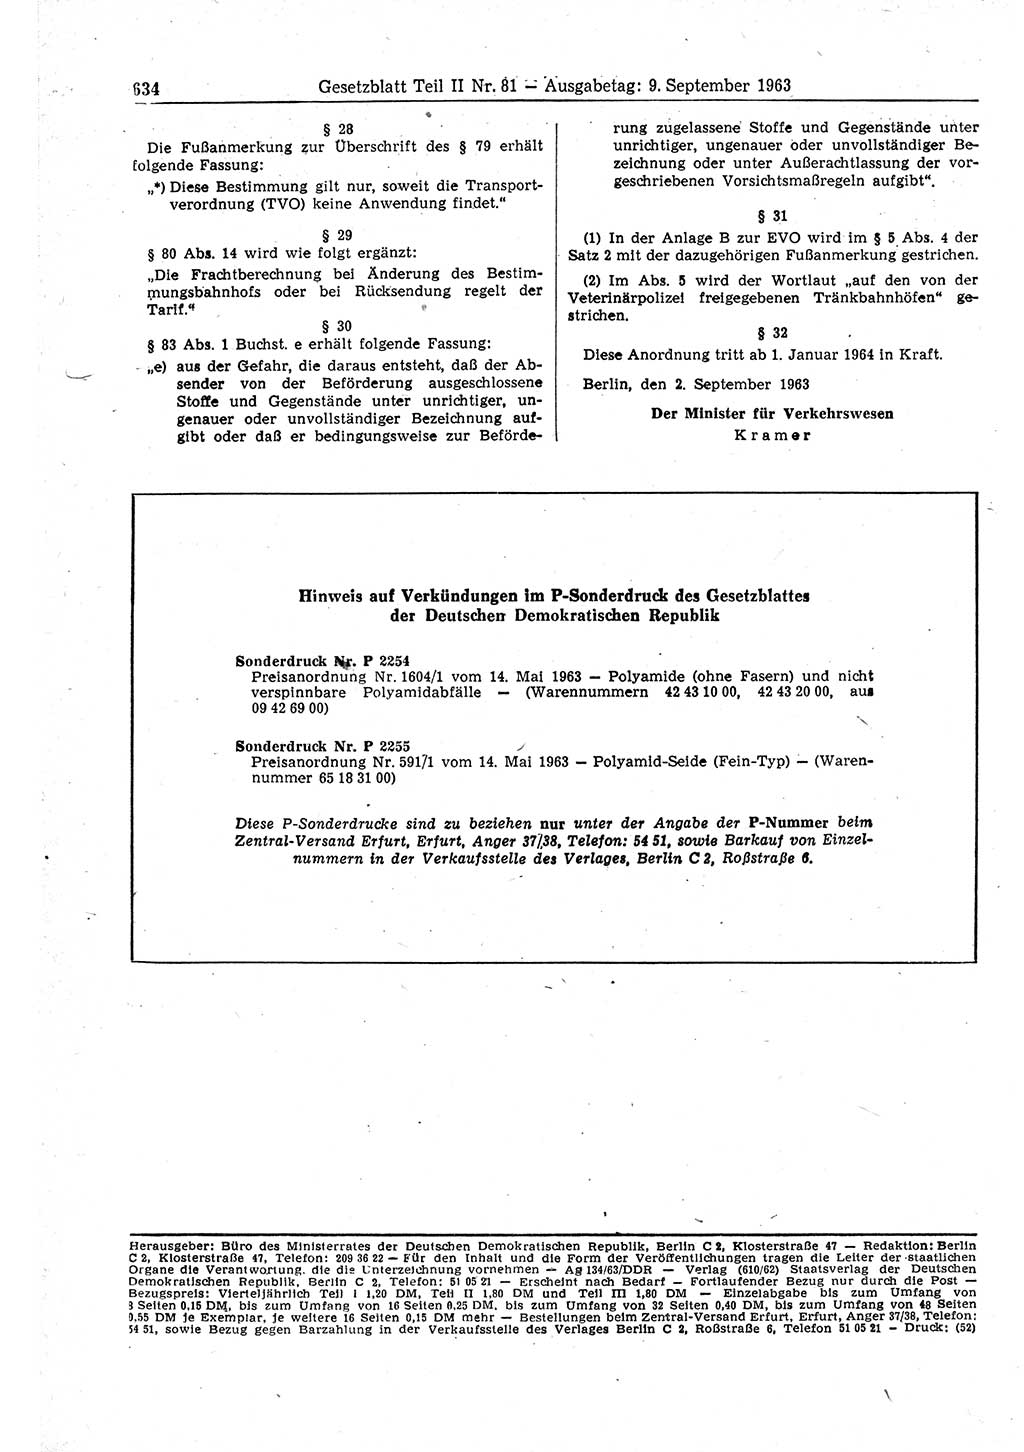 Gesetzblatt (GBl.) der Deutschen Demokratischen Republik (DDR) Teil ⅠⅠ 1963, Seite 634 (GBl. DDR ⅠⅠ 1963, S. 634)